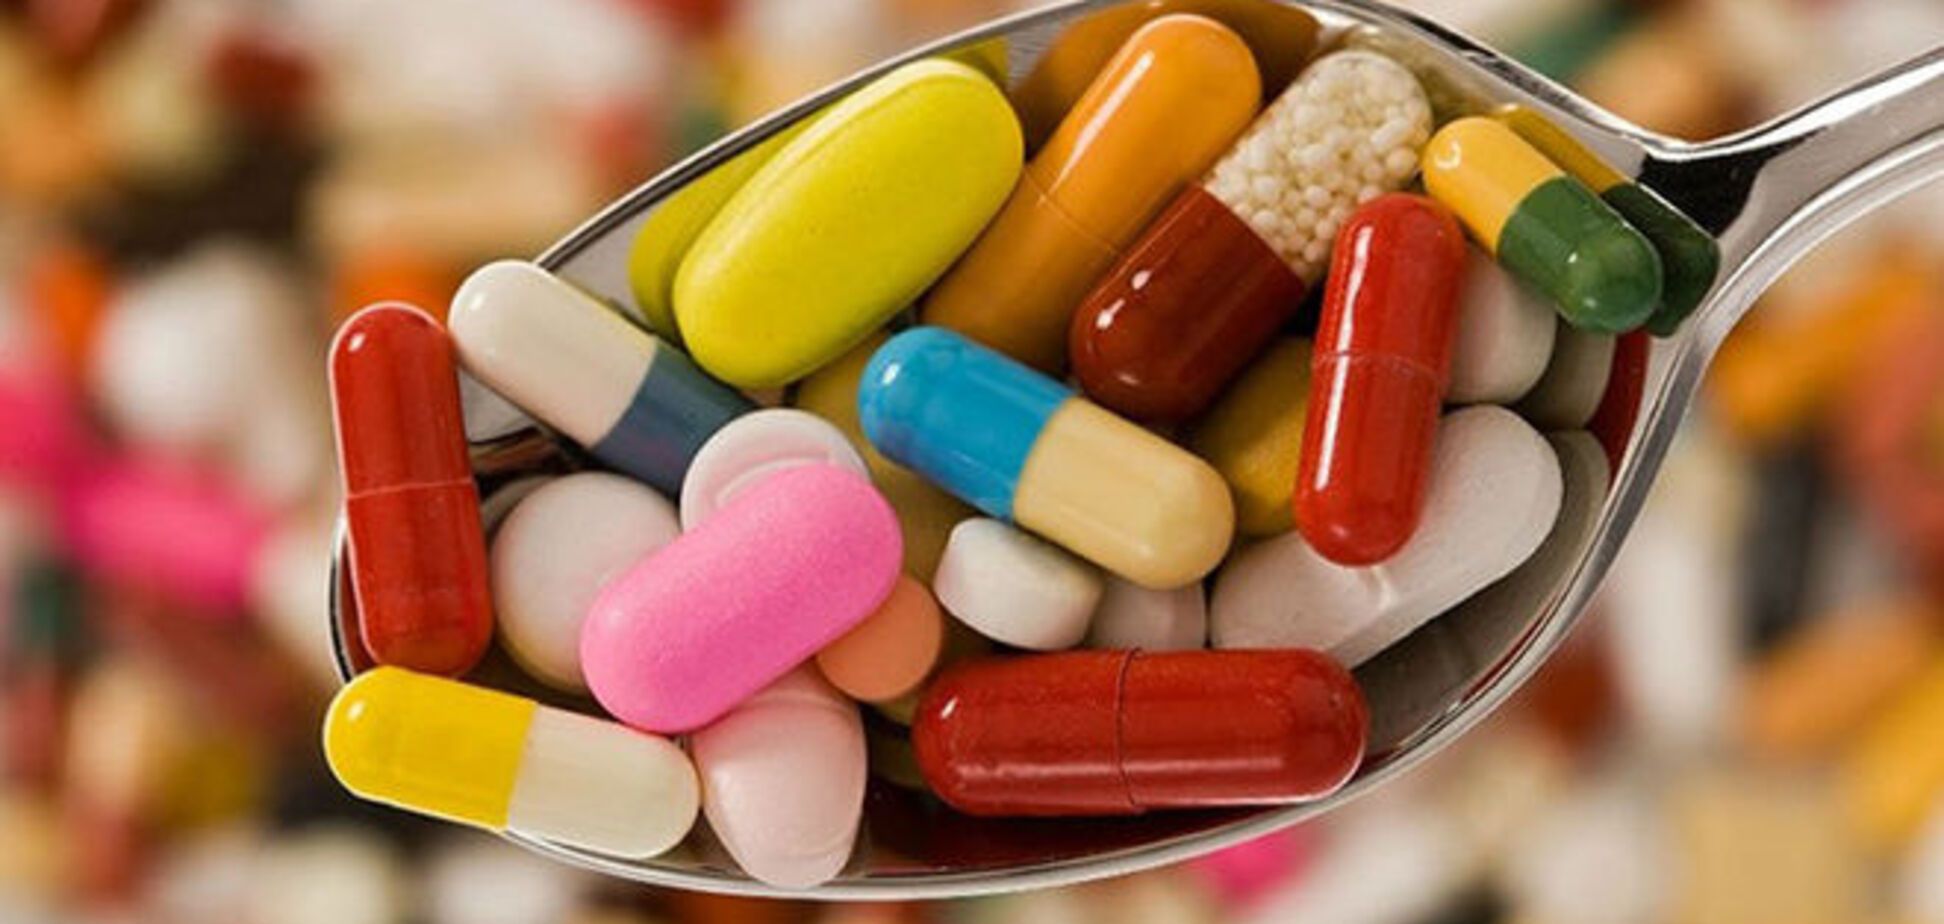 10 поразительных фактов об эффекте плацебо